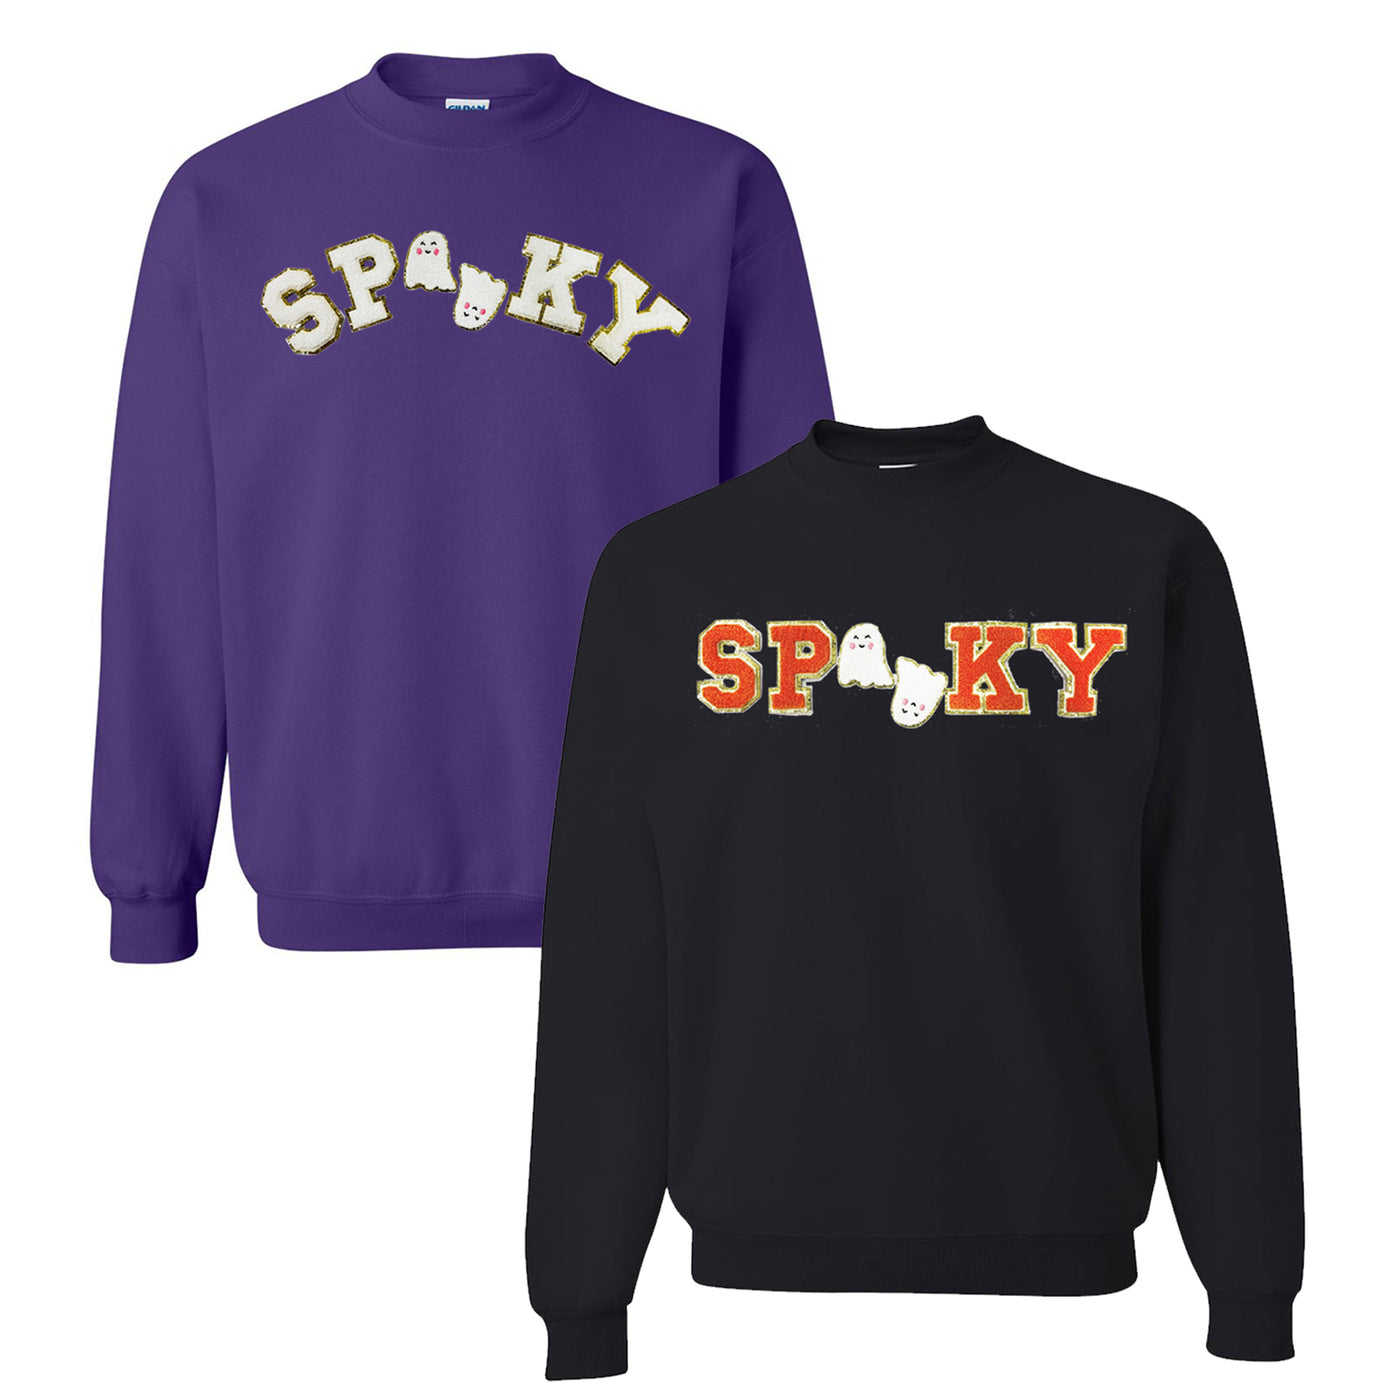 Spooky Letter Patch Crewneck Sweatshirt